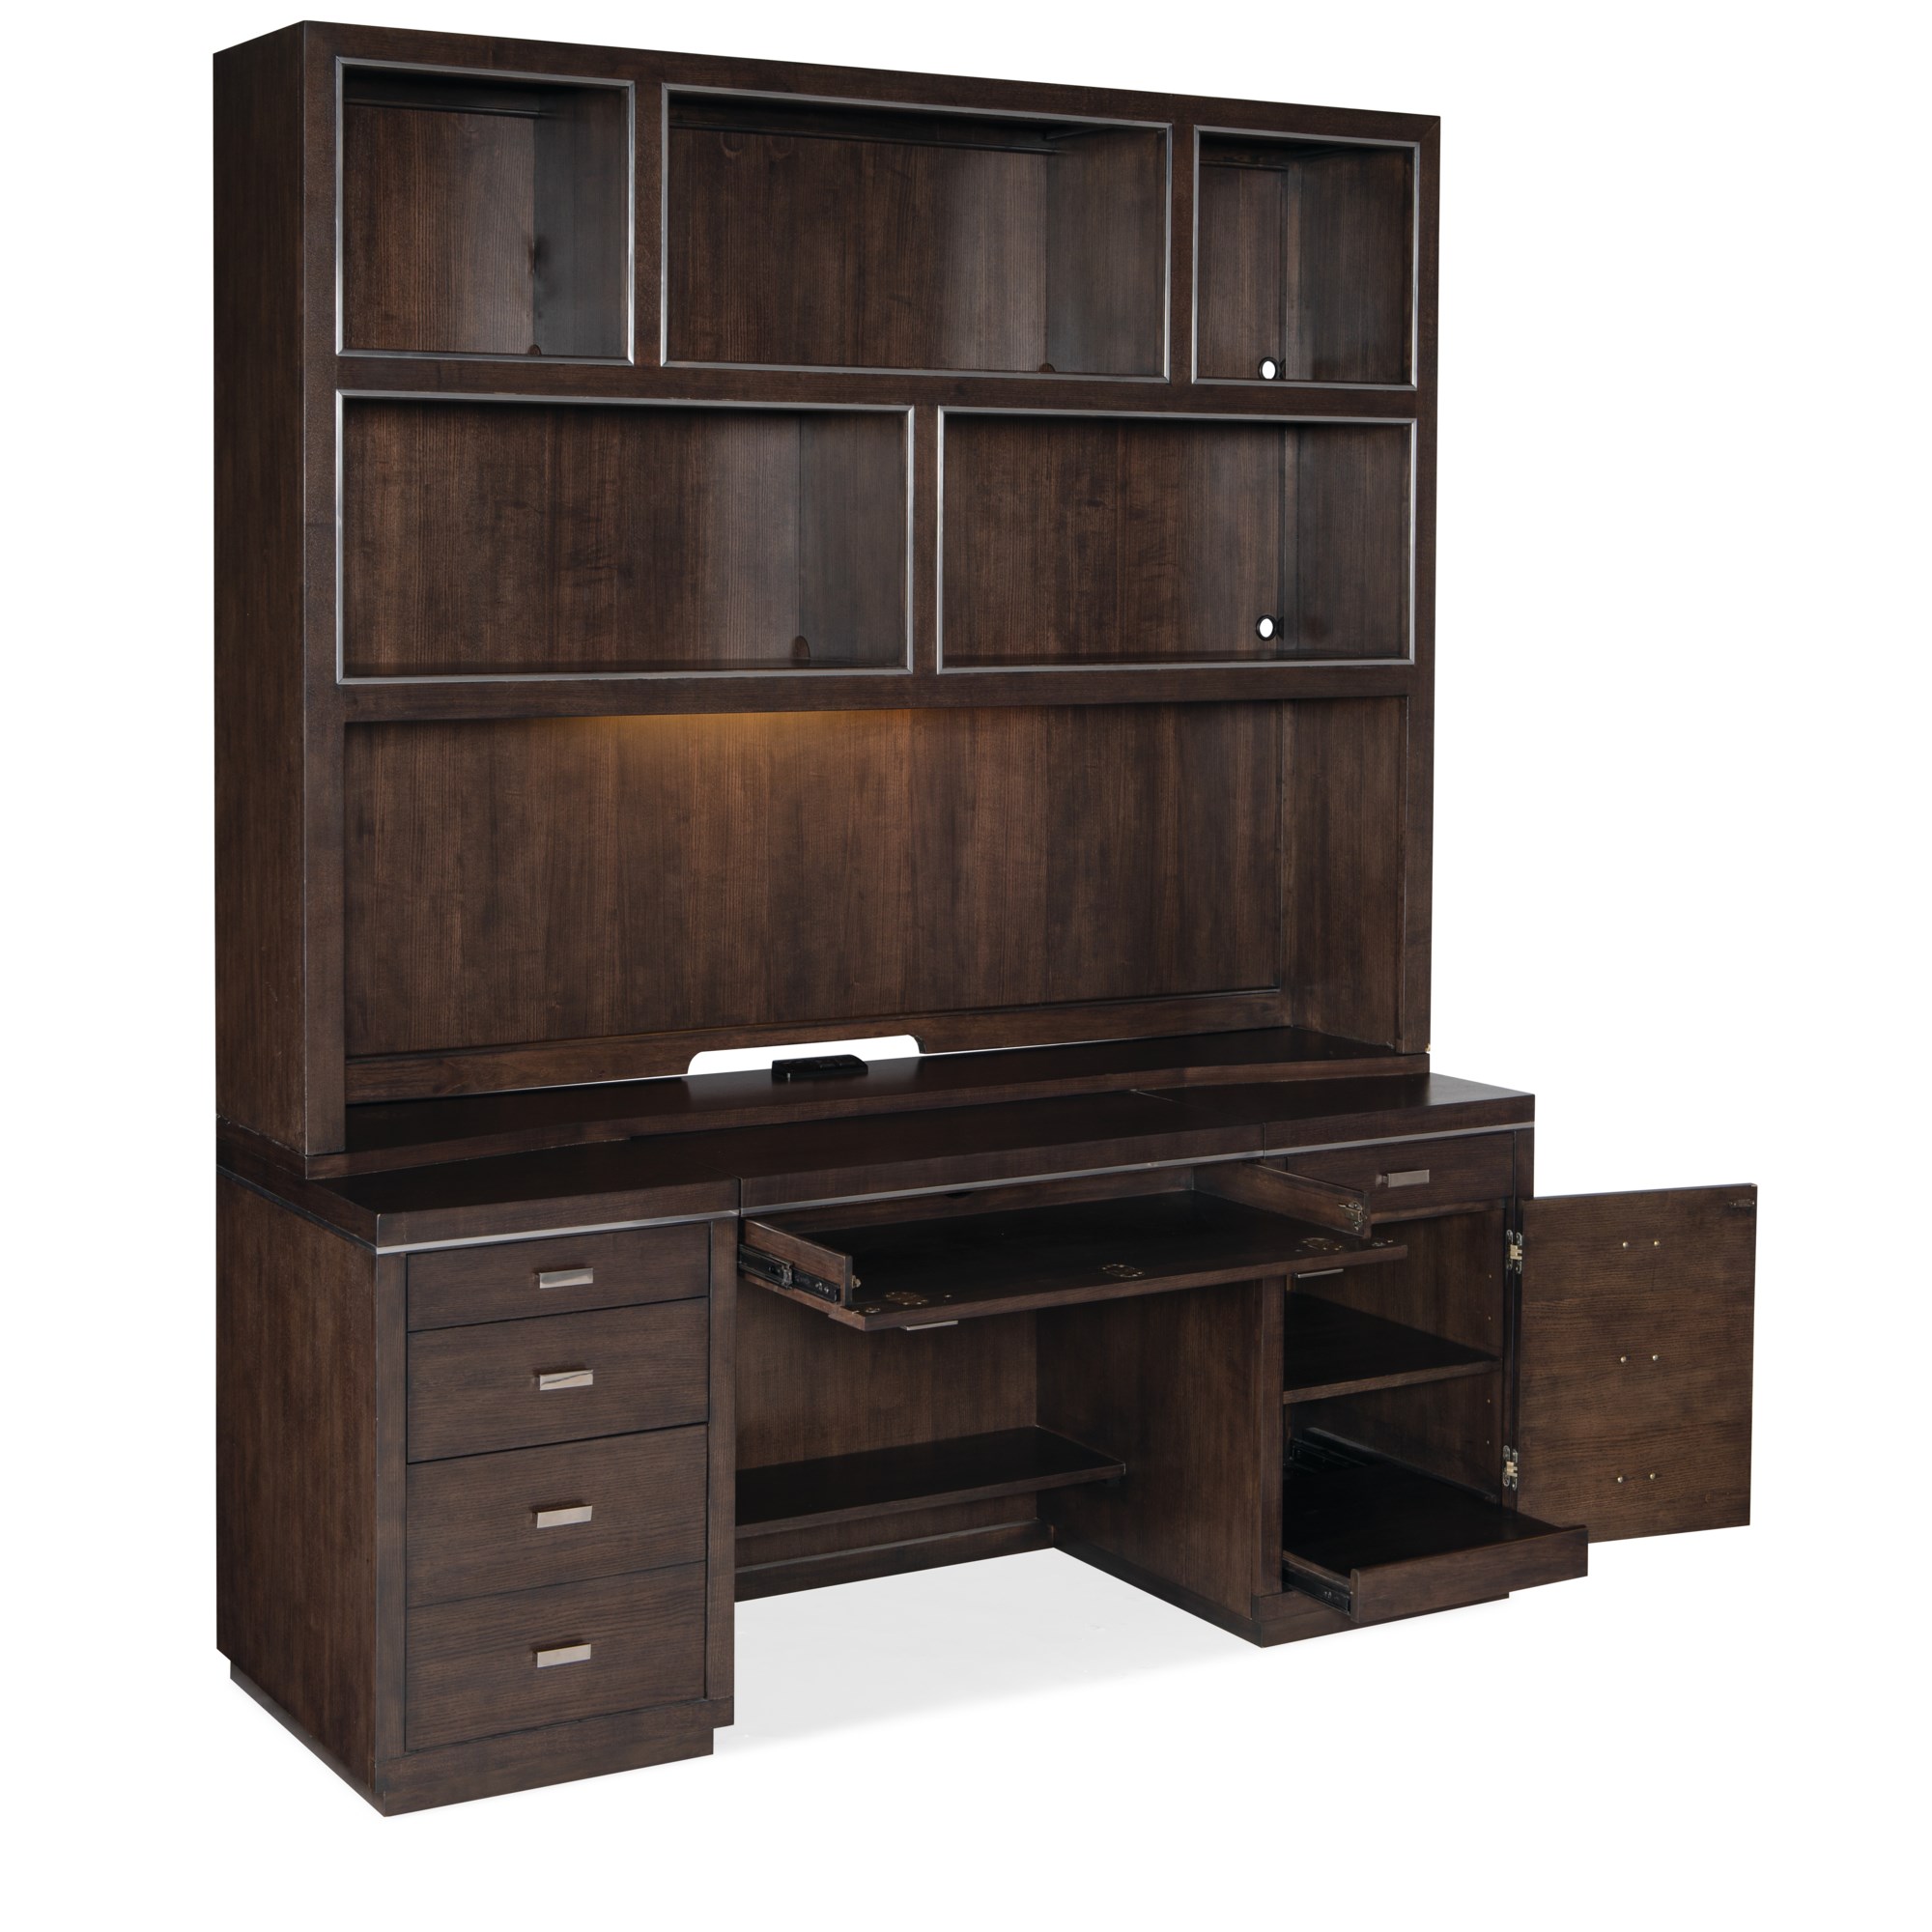 Hooker Furniture Work Your Way House Blend Credenza Desk